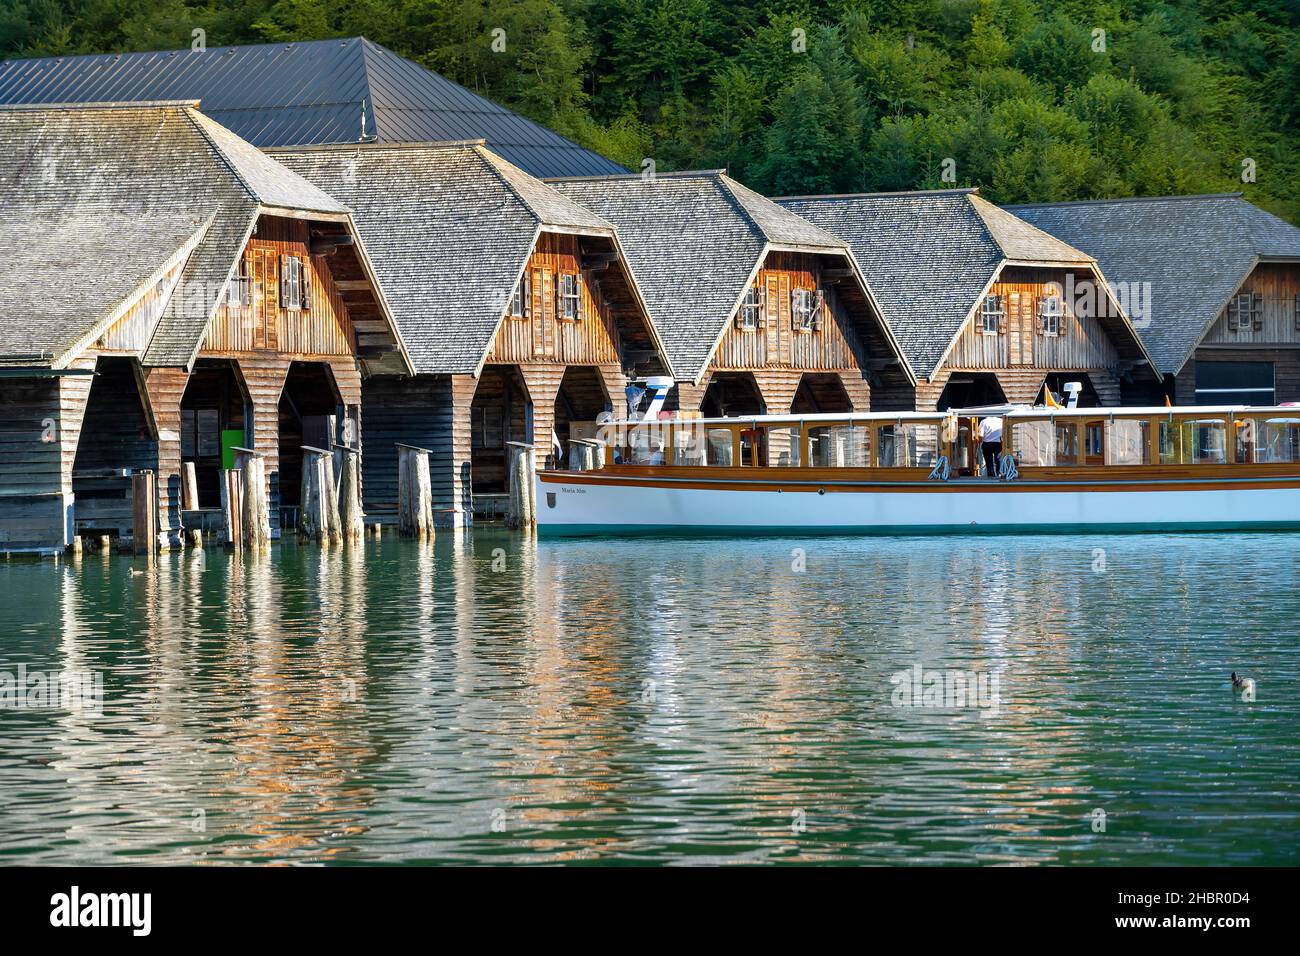 Die Schifffahrt auf dem Königsees vor Bartholomä im Berchtesgadener Land, Oberbayern, Deutschland, Die Boote kehren am Abend ind die Bootshütte an de Foto Stock